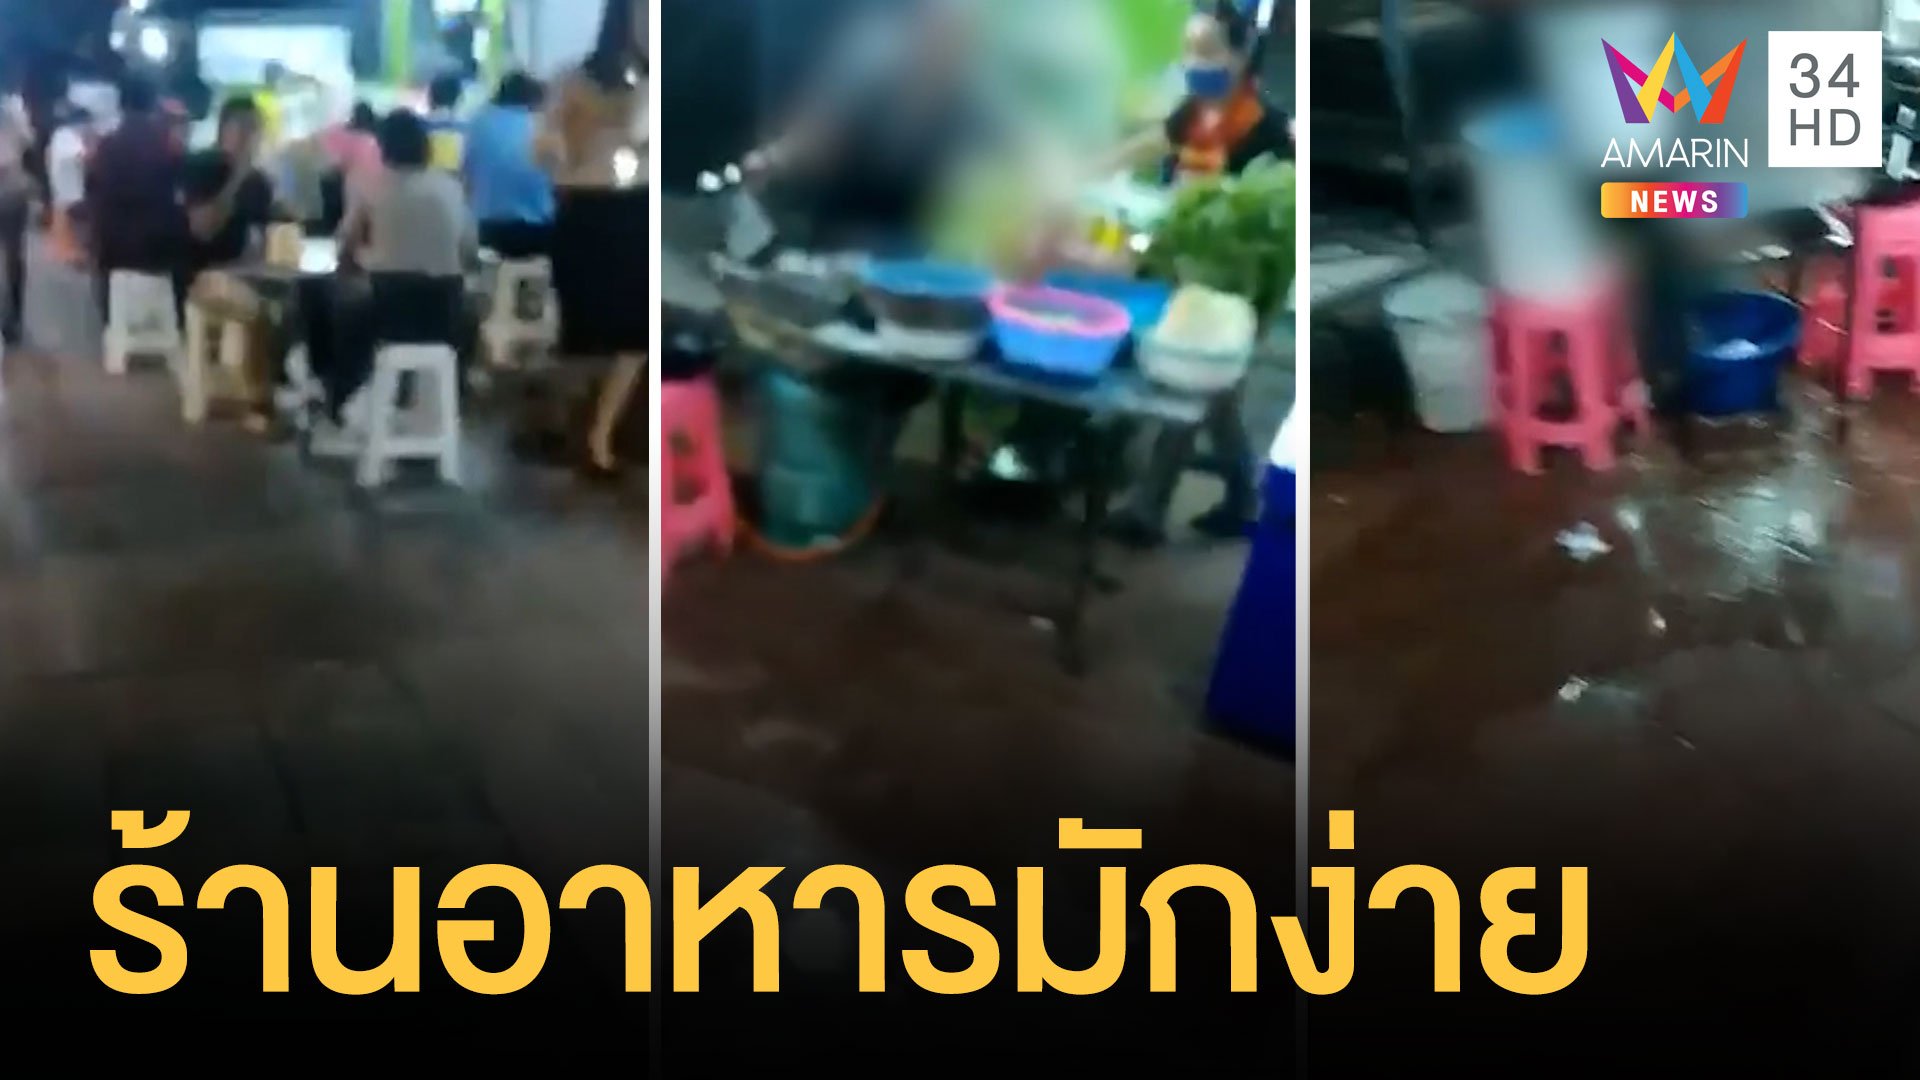 ร้านอาหารข้างทางมักง่าย ล้างกระทะเทน้ำลงทางเท้า | ข่าวอรุณอมรินทร์ | 19 เม.ย. 64 | AMARIN TVHD34